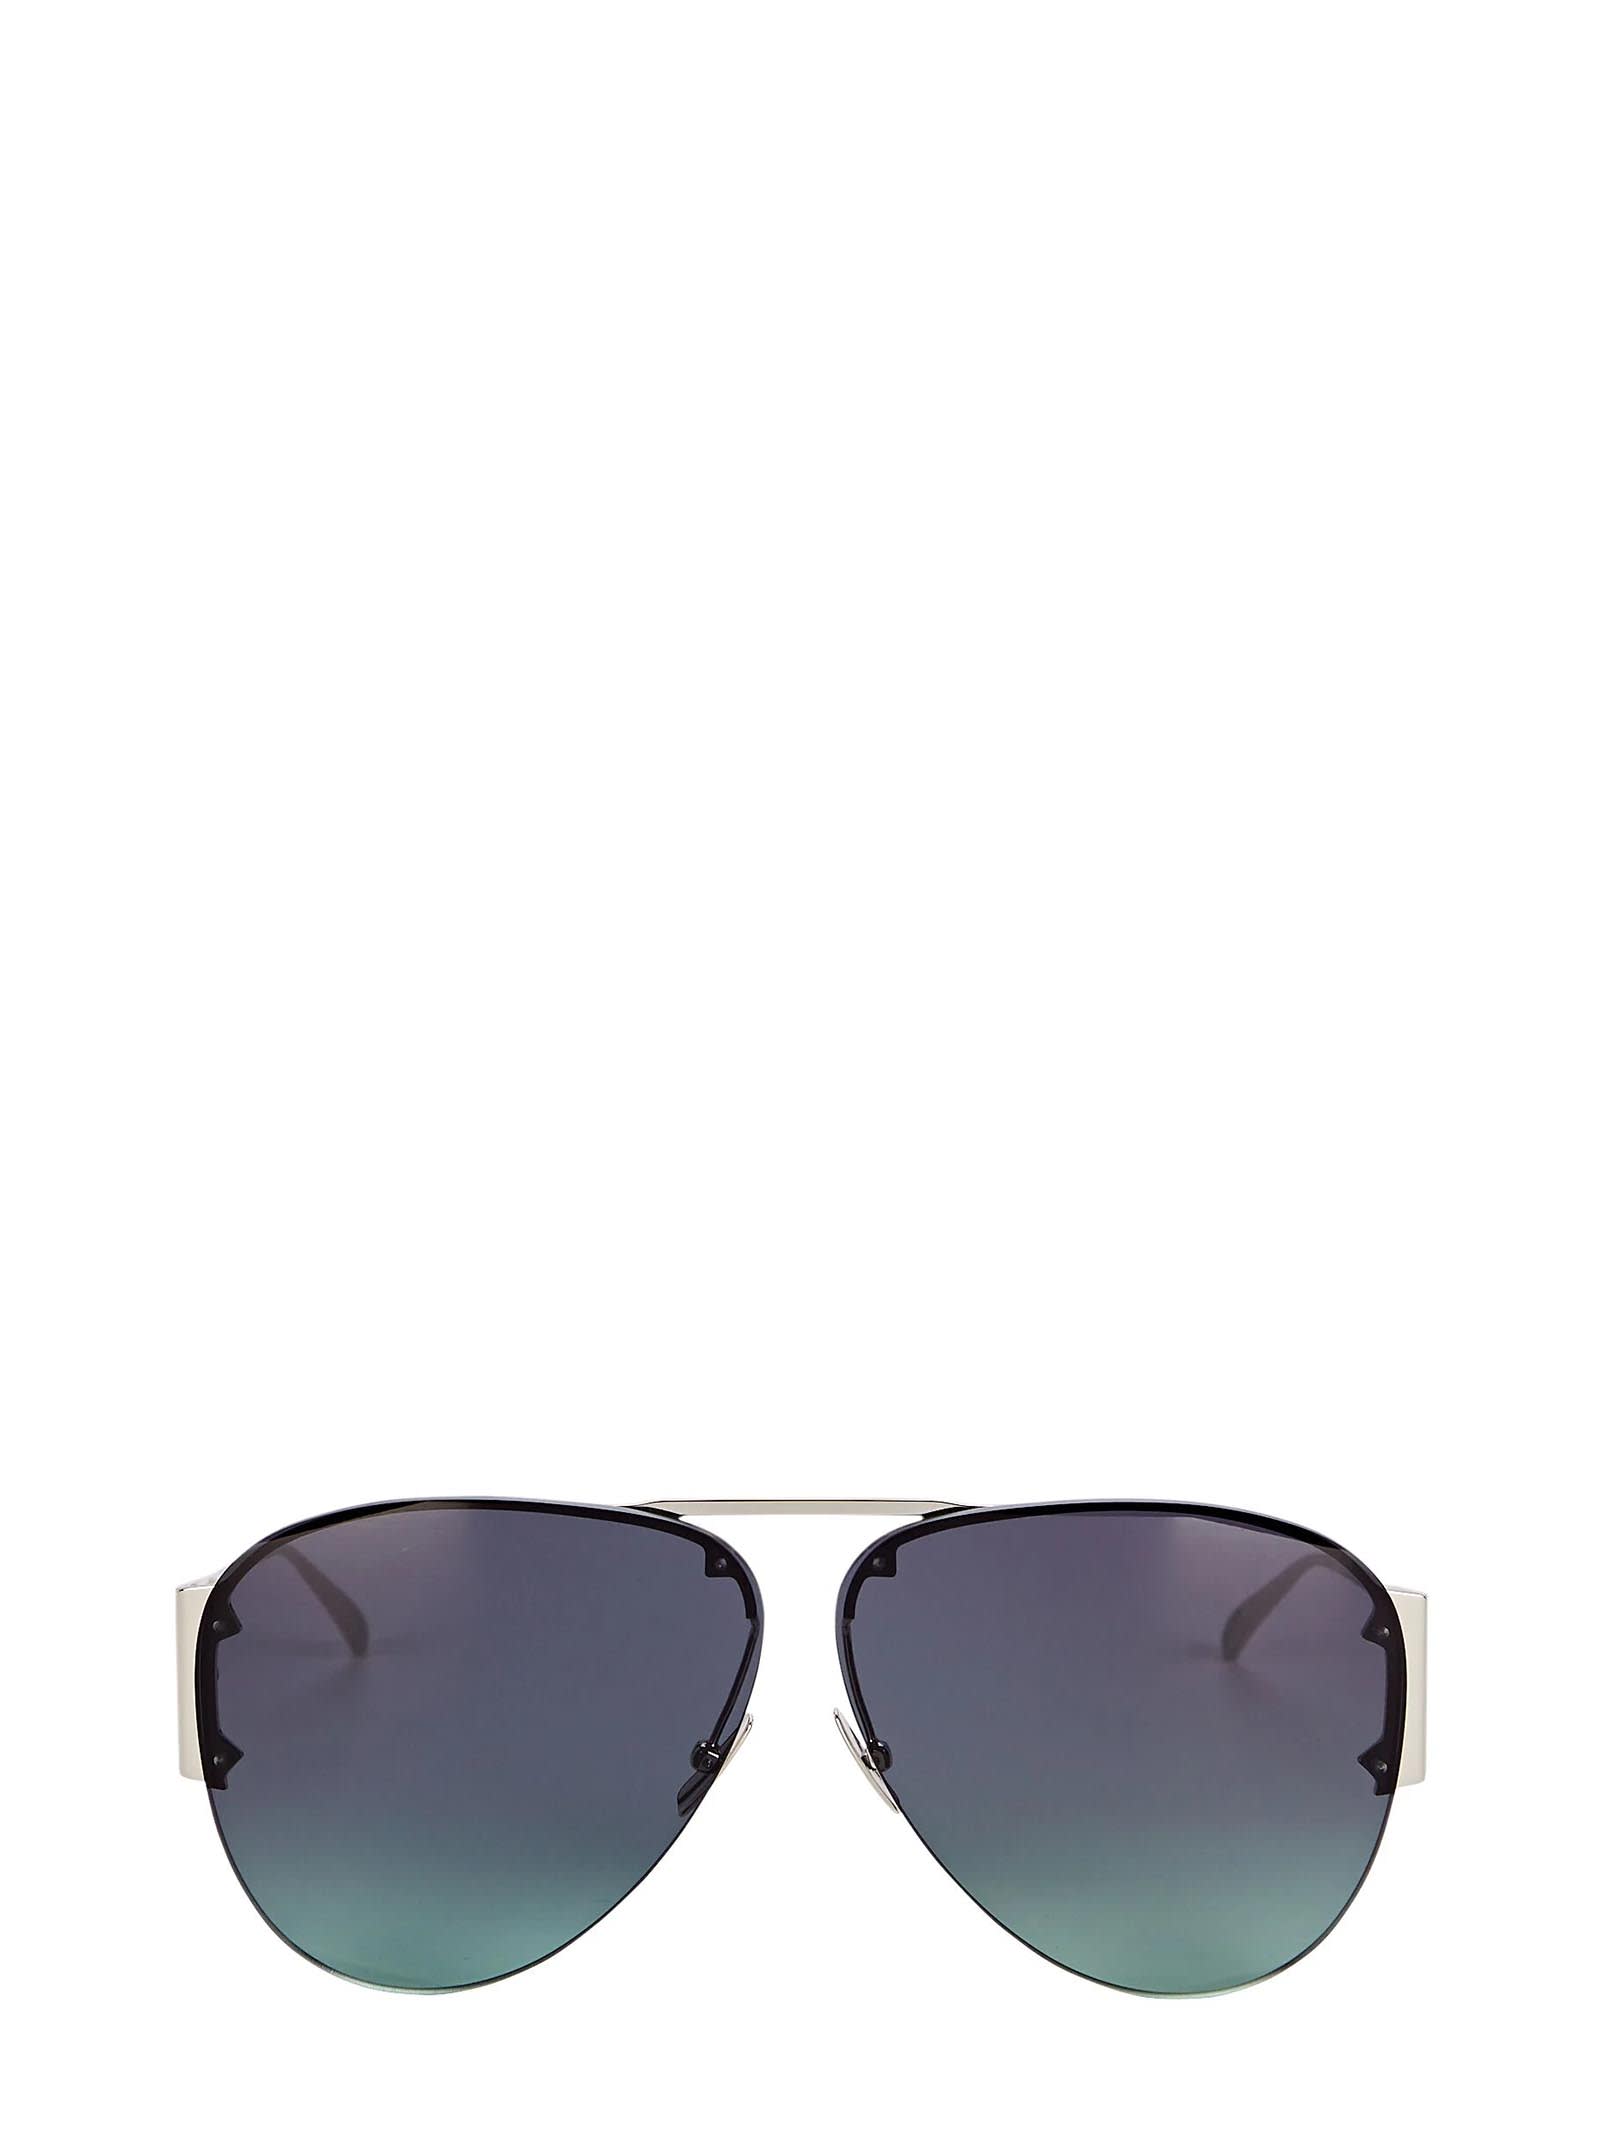 Bottega Veneta Bottega Veneta Bv1066s Silver Sunglasses